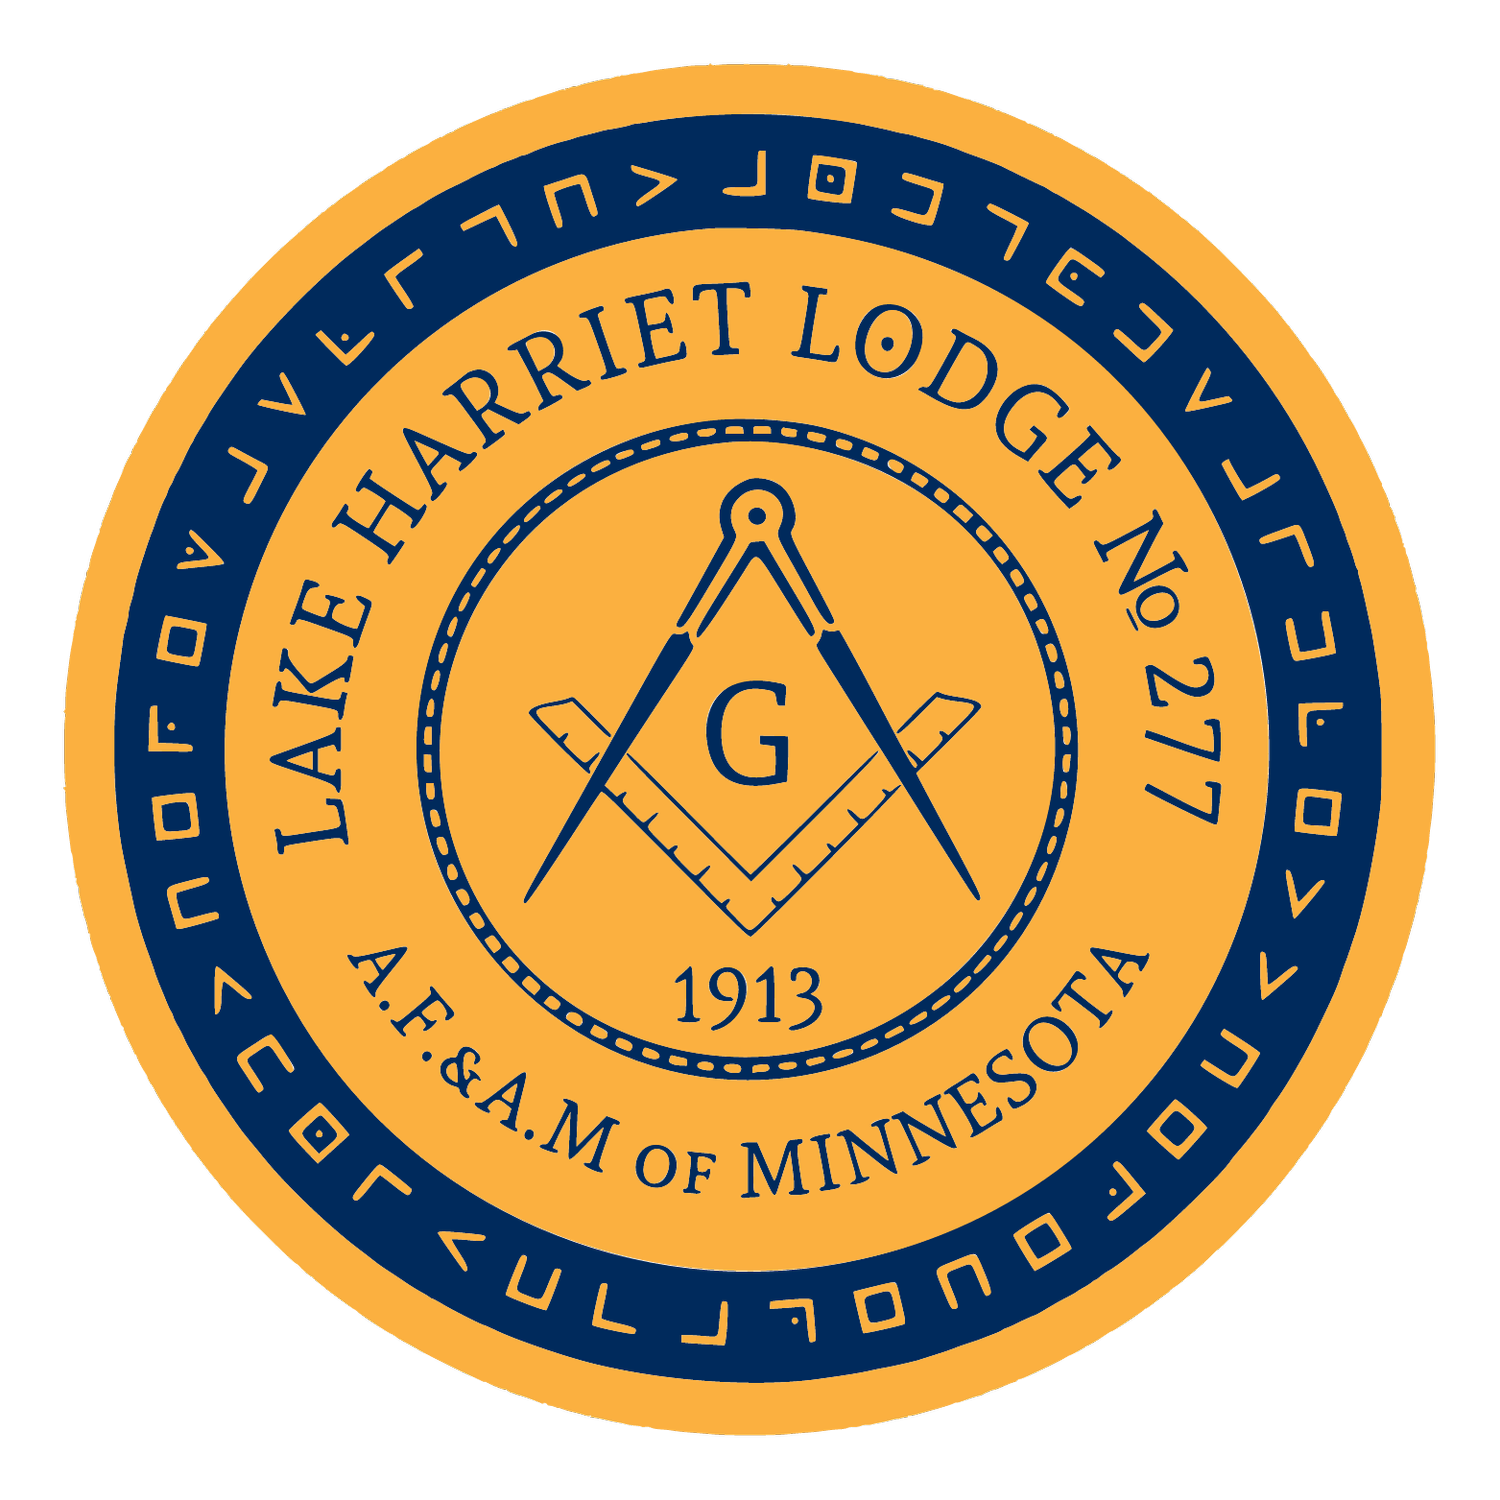 Lake Harriet Lodge No. 277